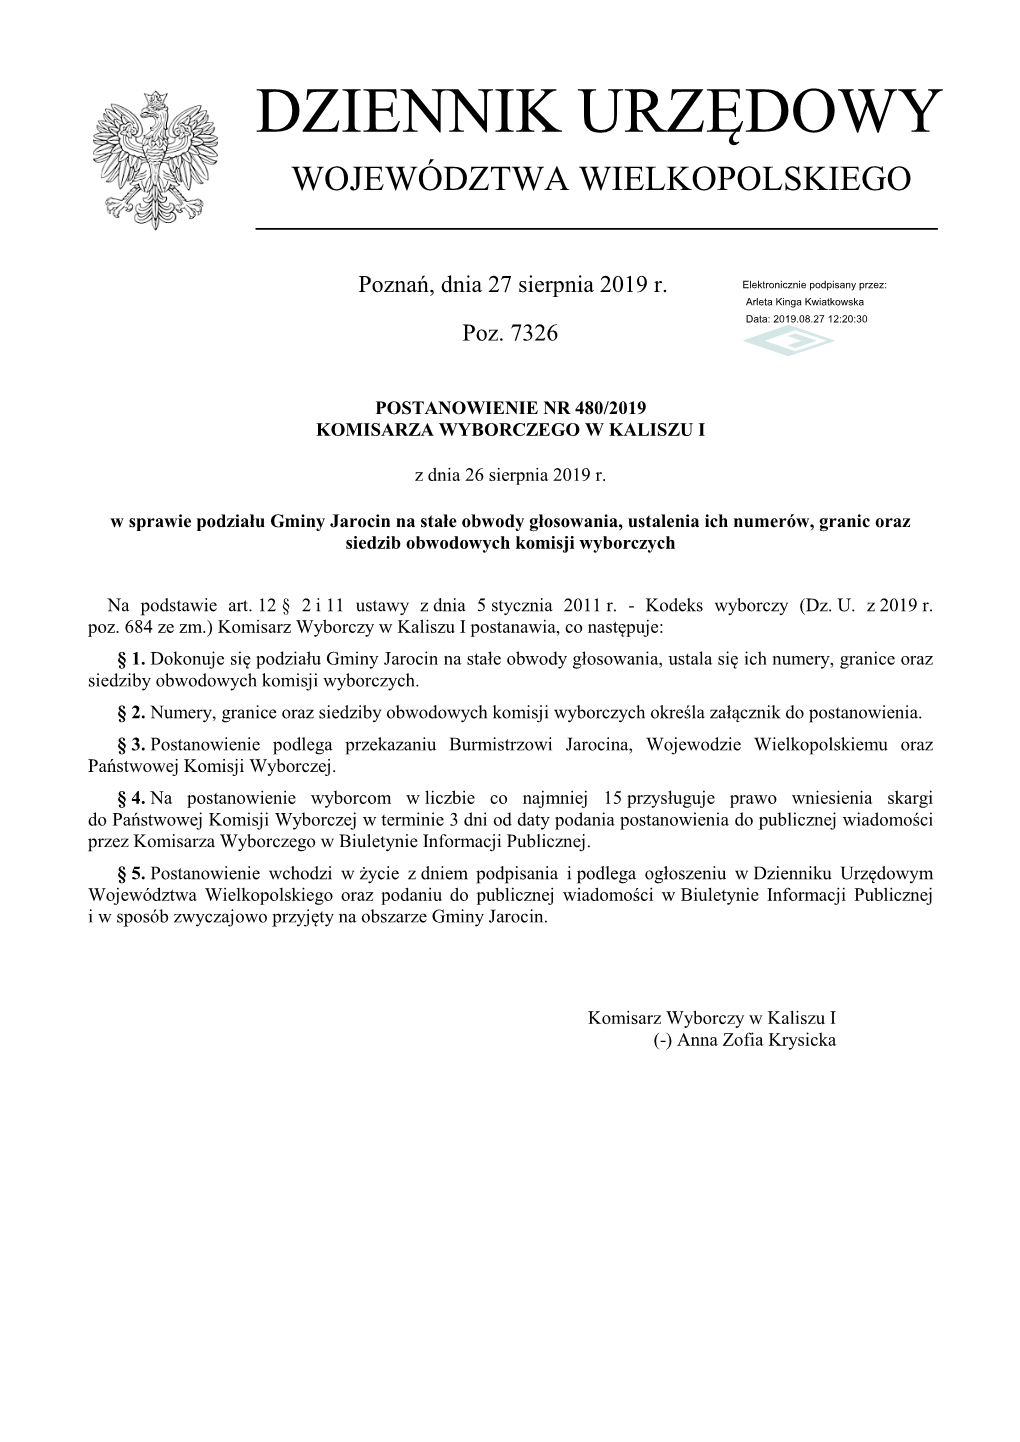 Postanowienie Nr 480/2019 Komisarza Wyborczego W Kaliszu I